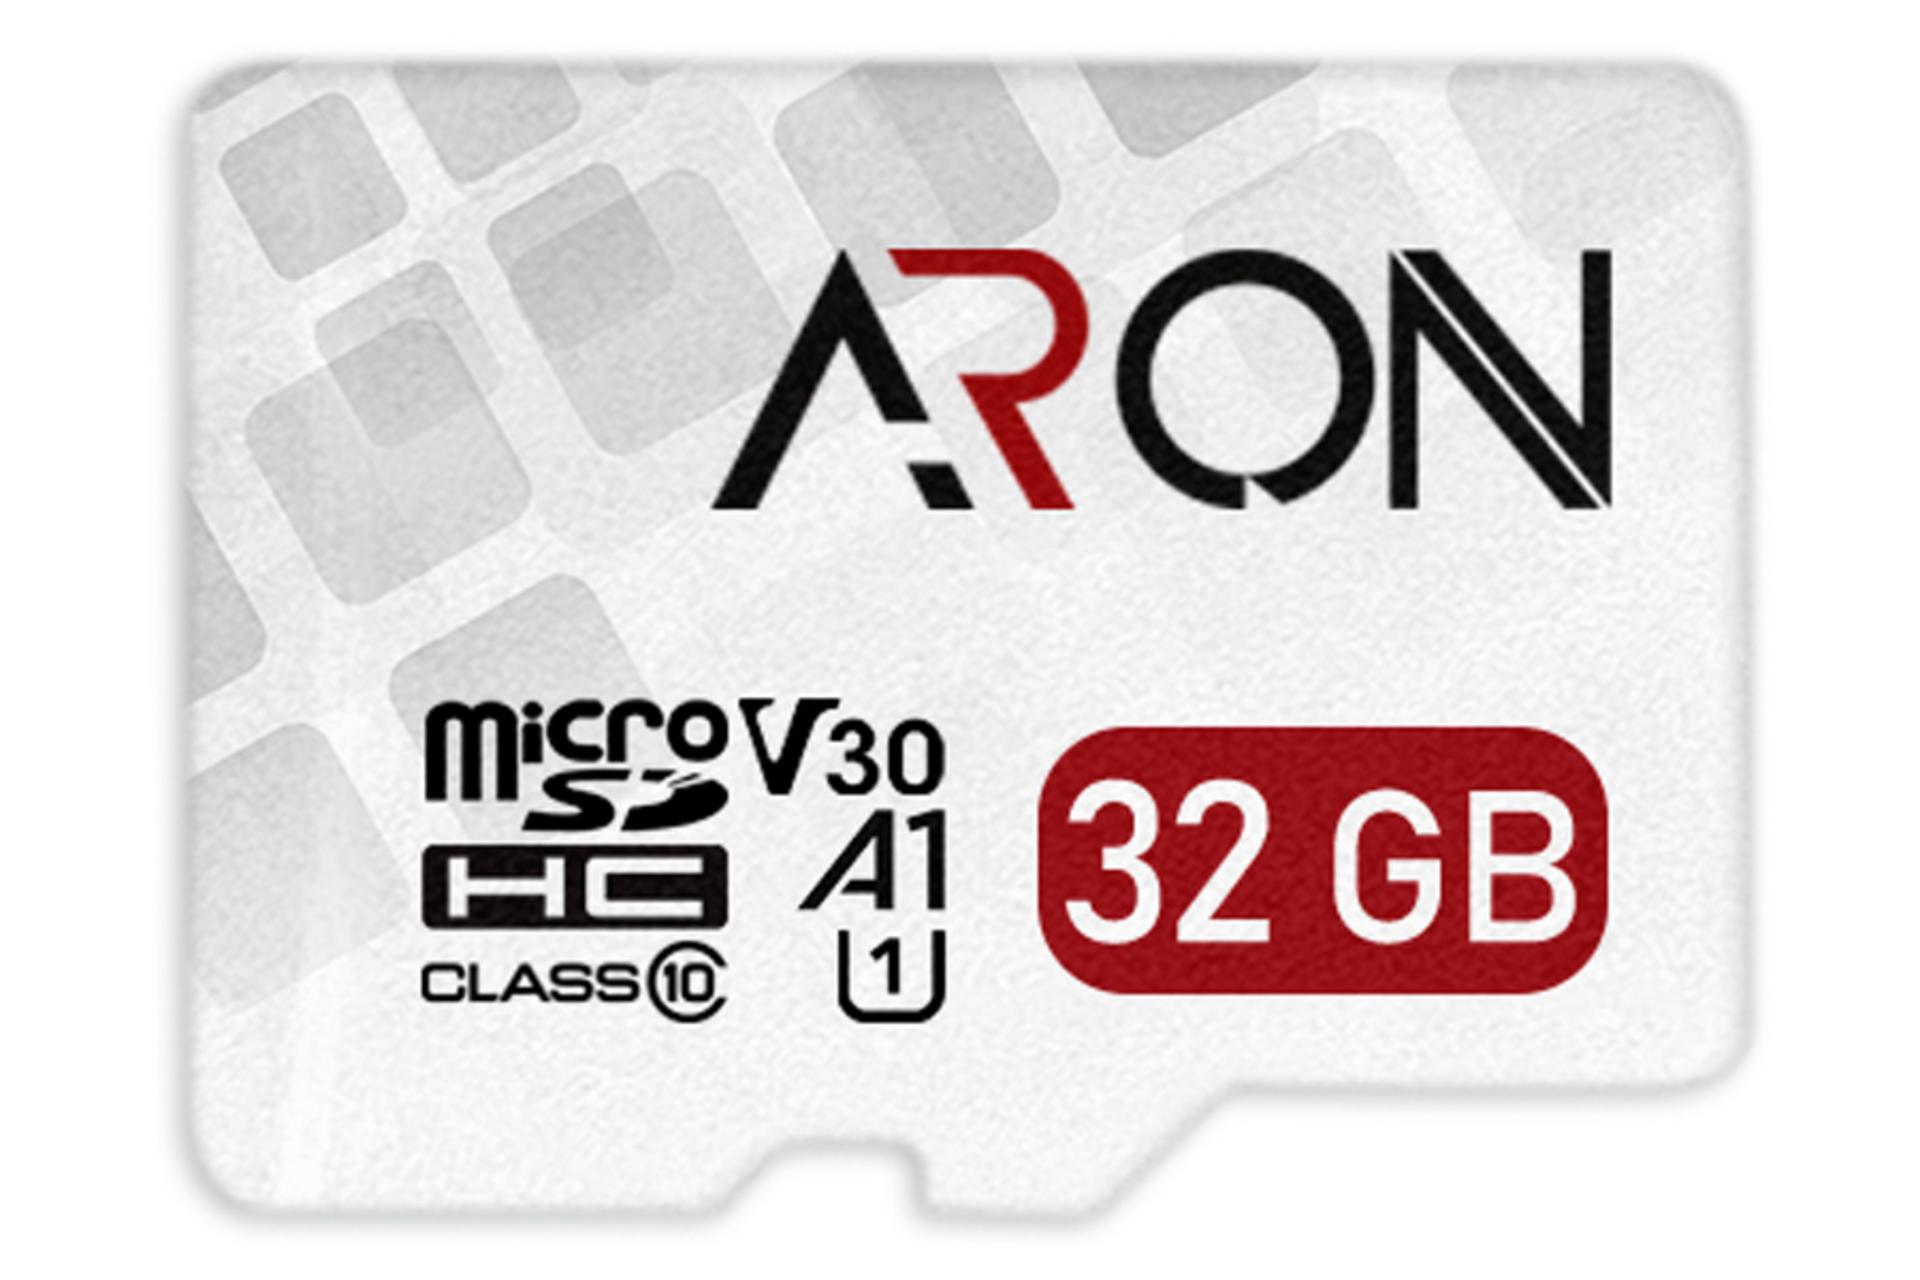 آرون microSDHC با ظرفیت 32 گیگابایت مدل Pro V30 A1 کلاس 10